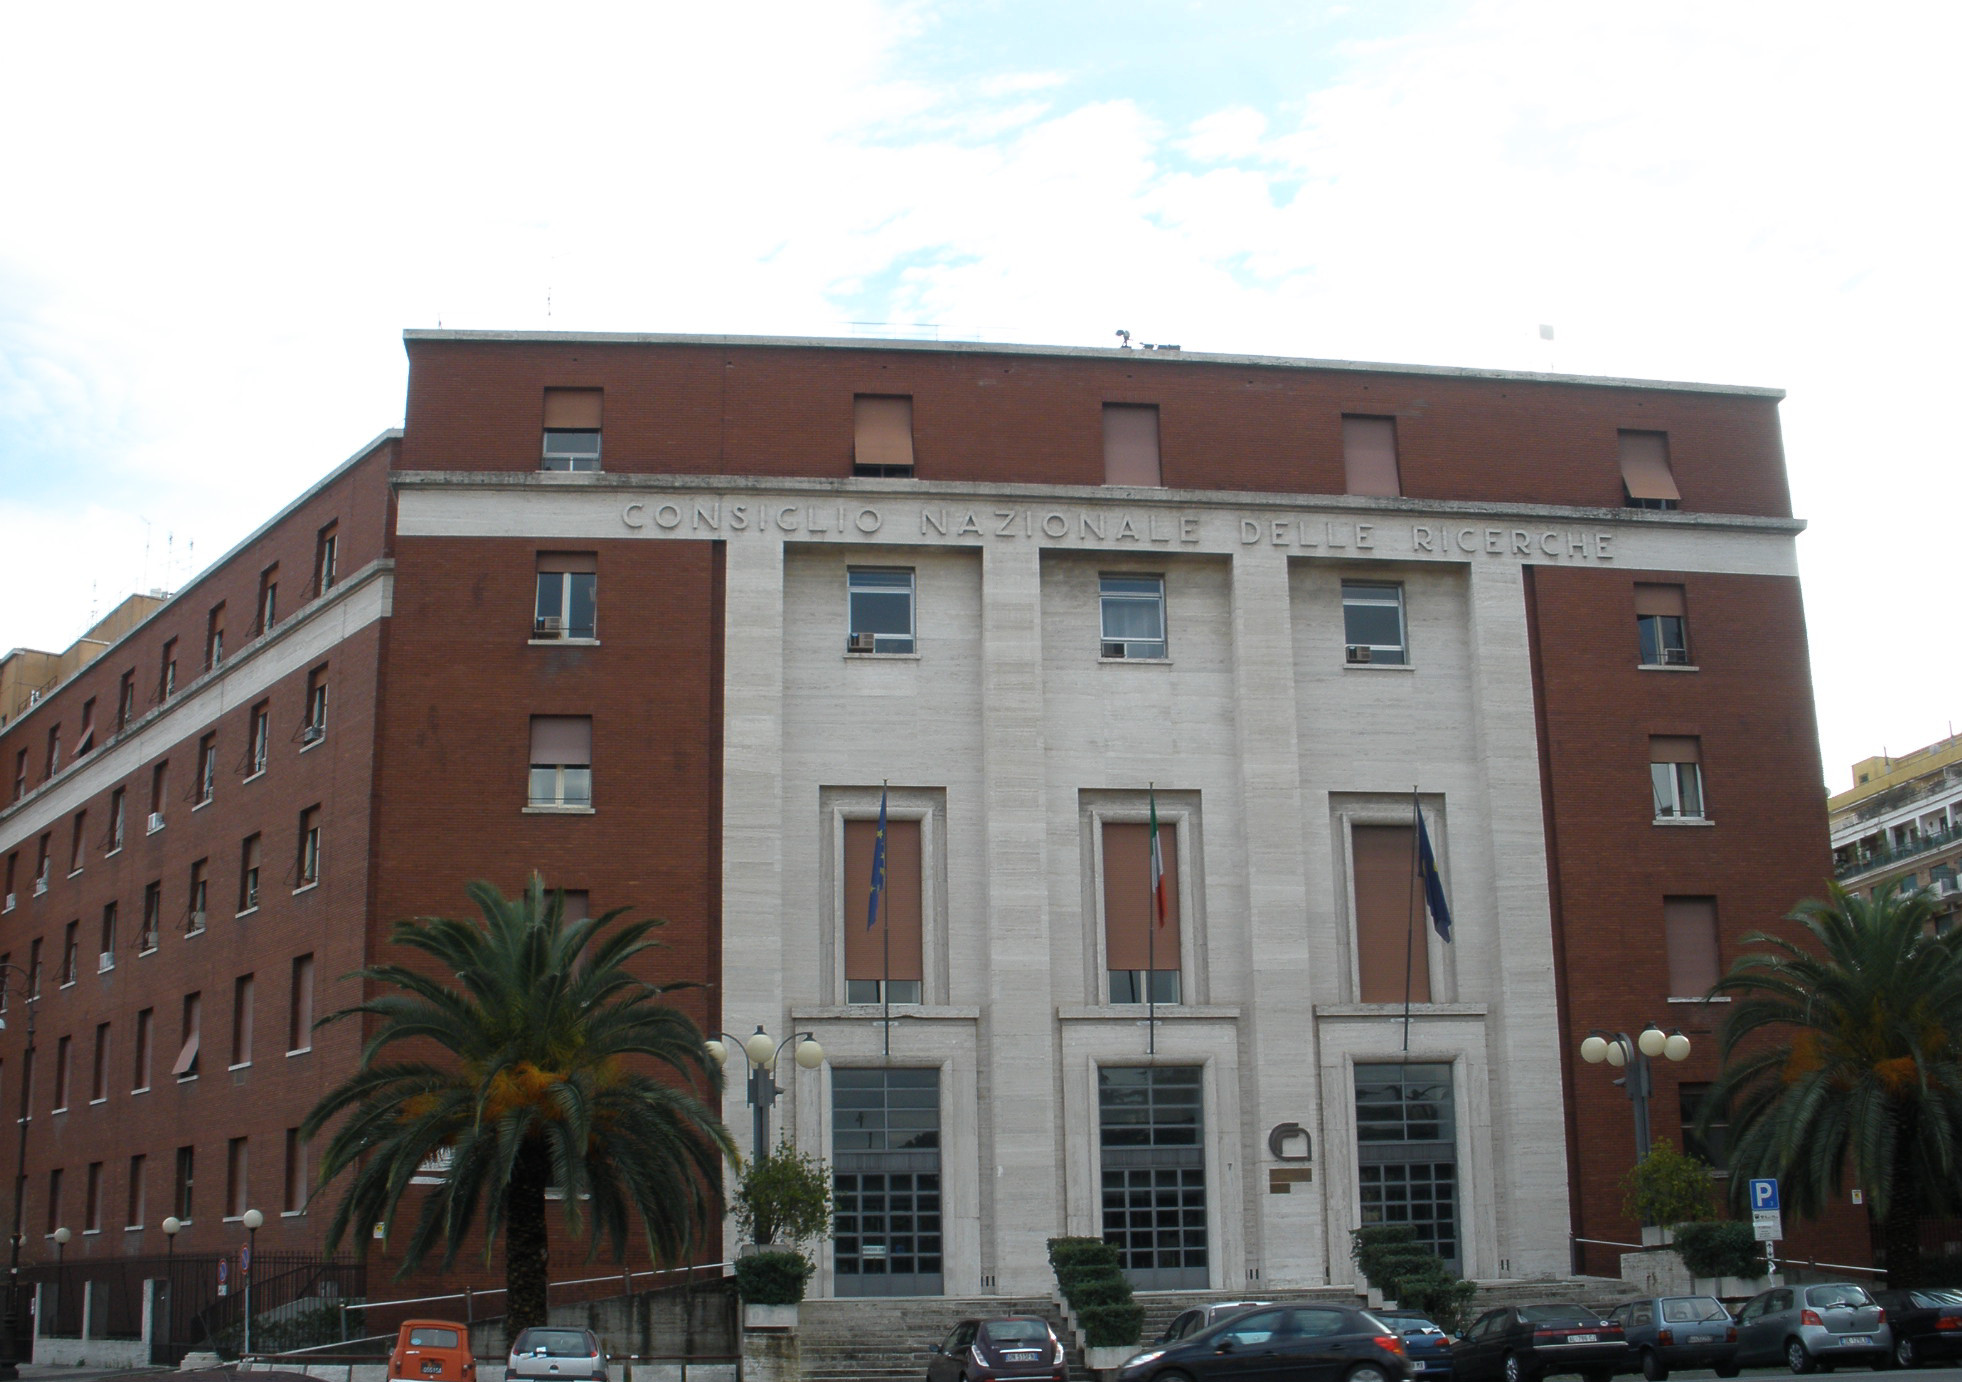 CNR HQ in Rome